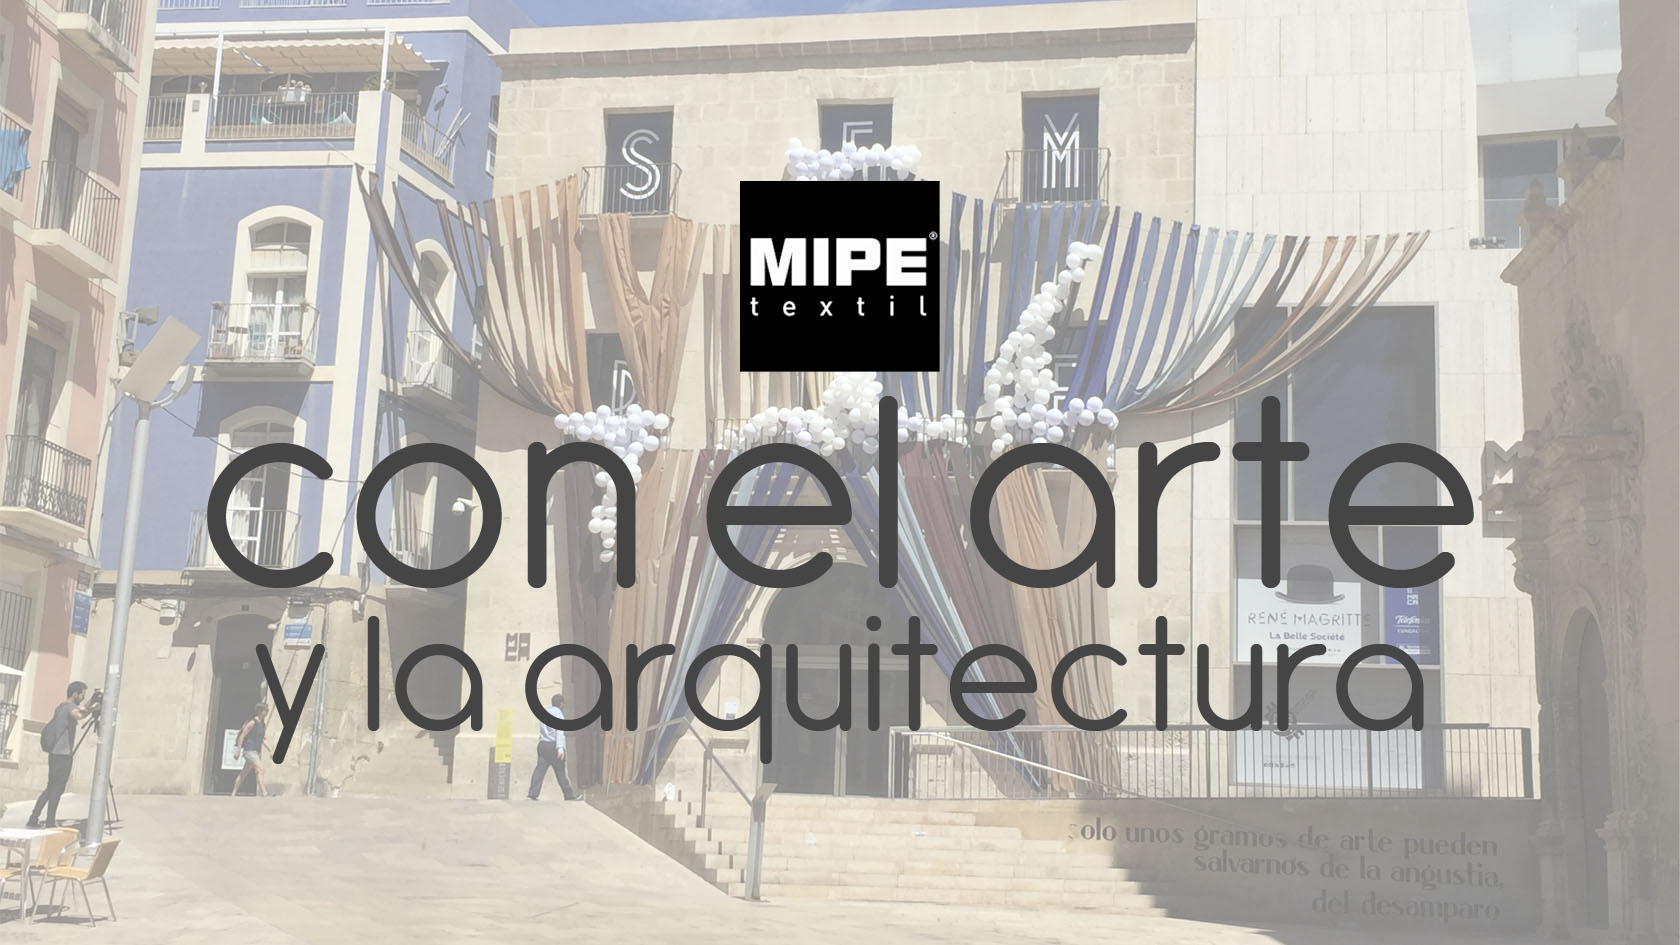 MIPE TEXTIL museo contemporáneo de Alicante